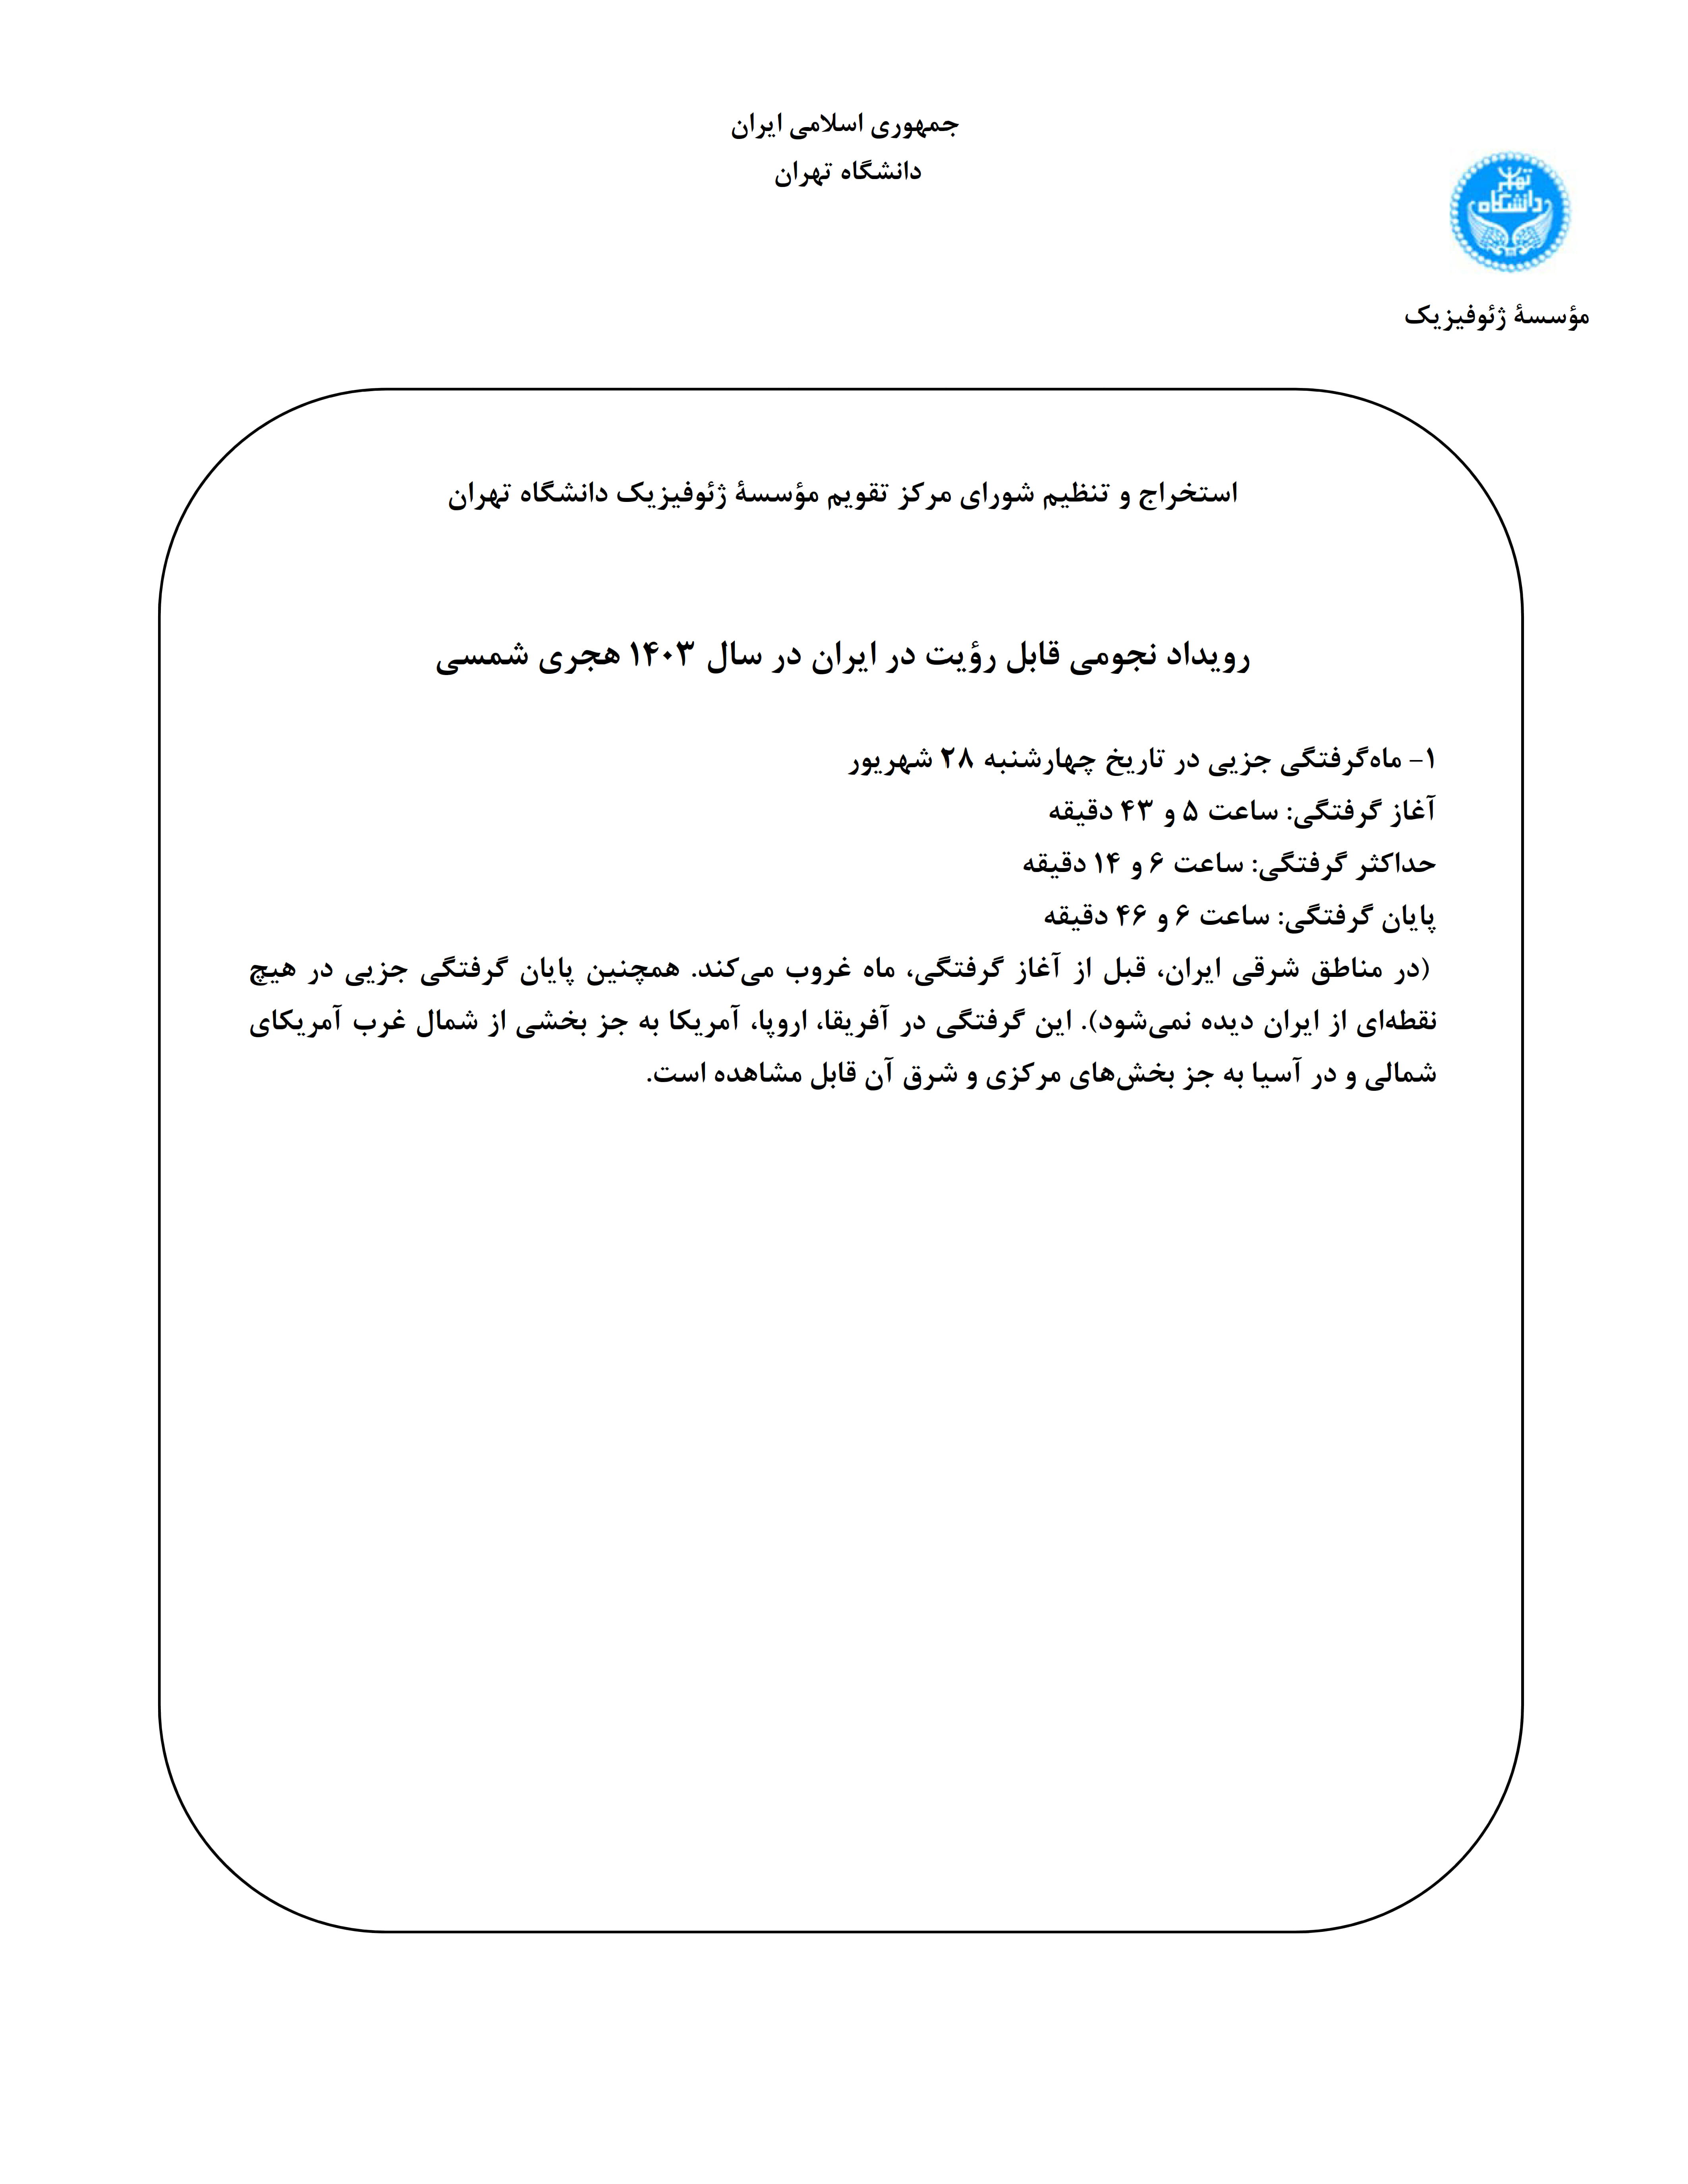 دانلود رایگان PDF تقویم رسمی سال 1403 هجري شمسي